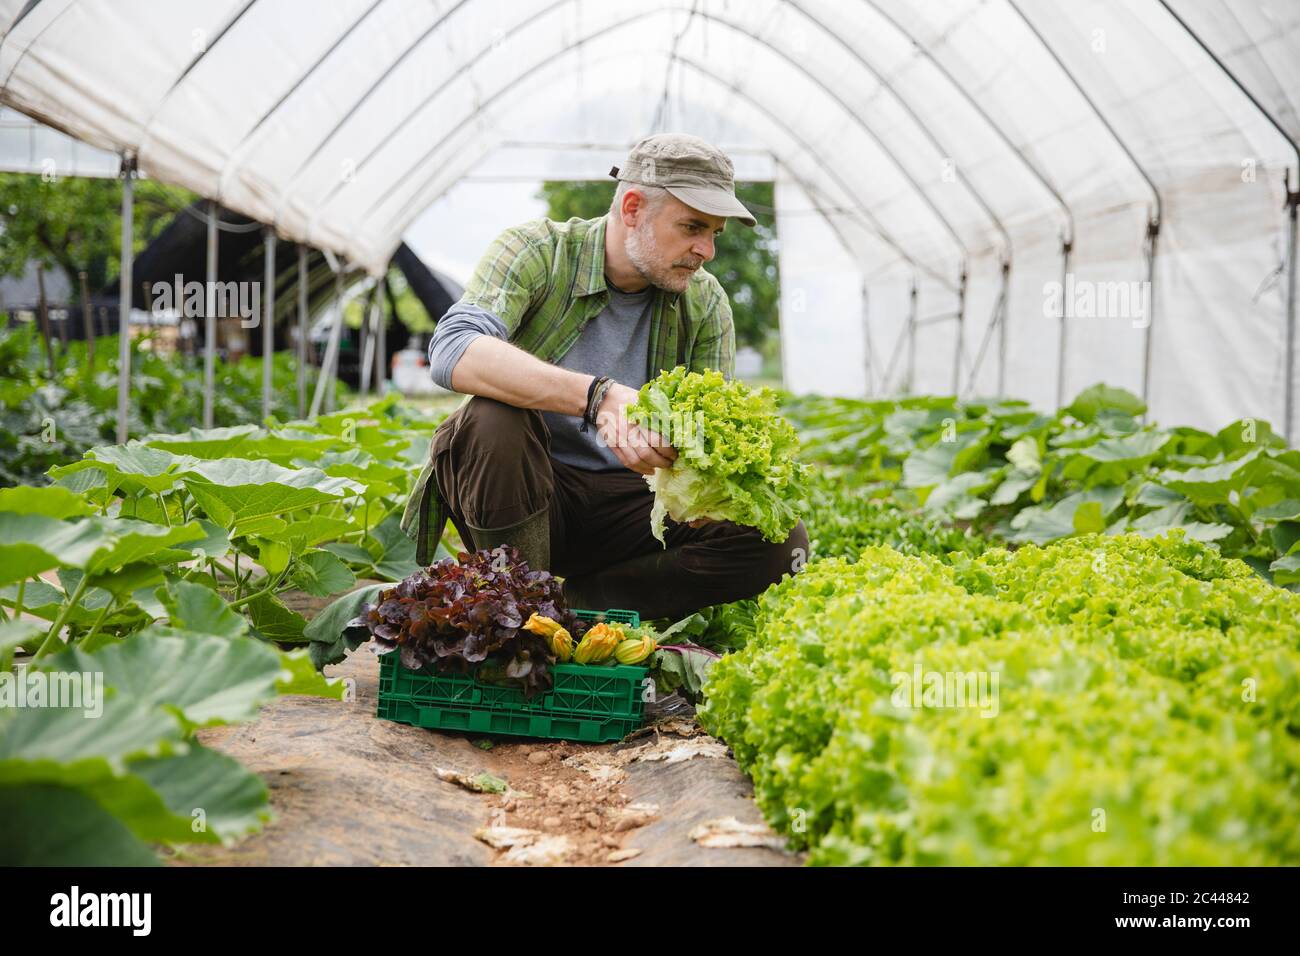 Fermier collectant une boîte de salade, agriculture biologique Banque D'Images